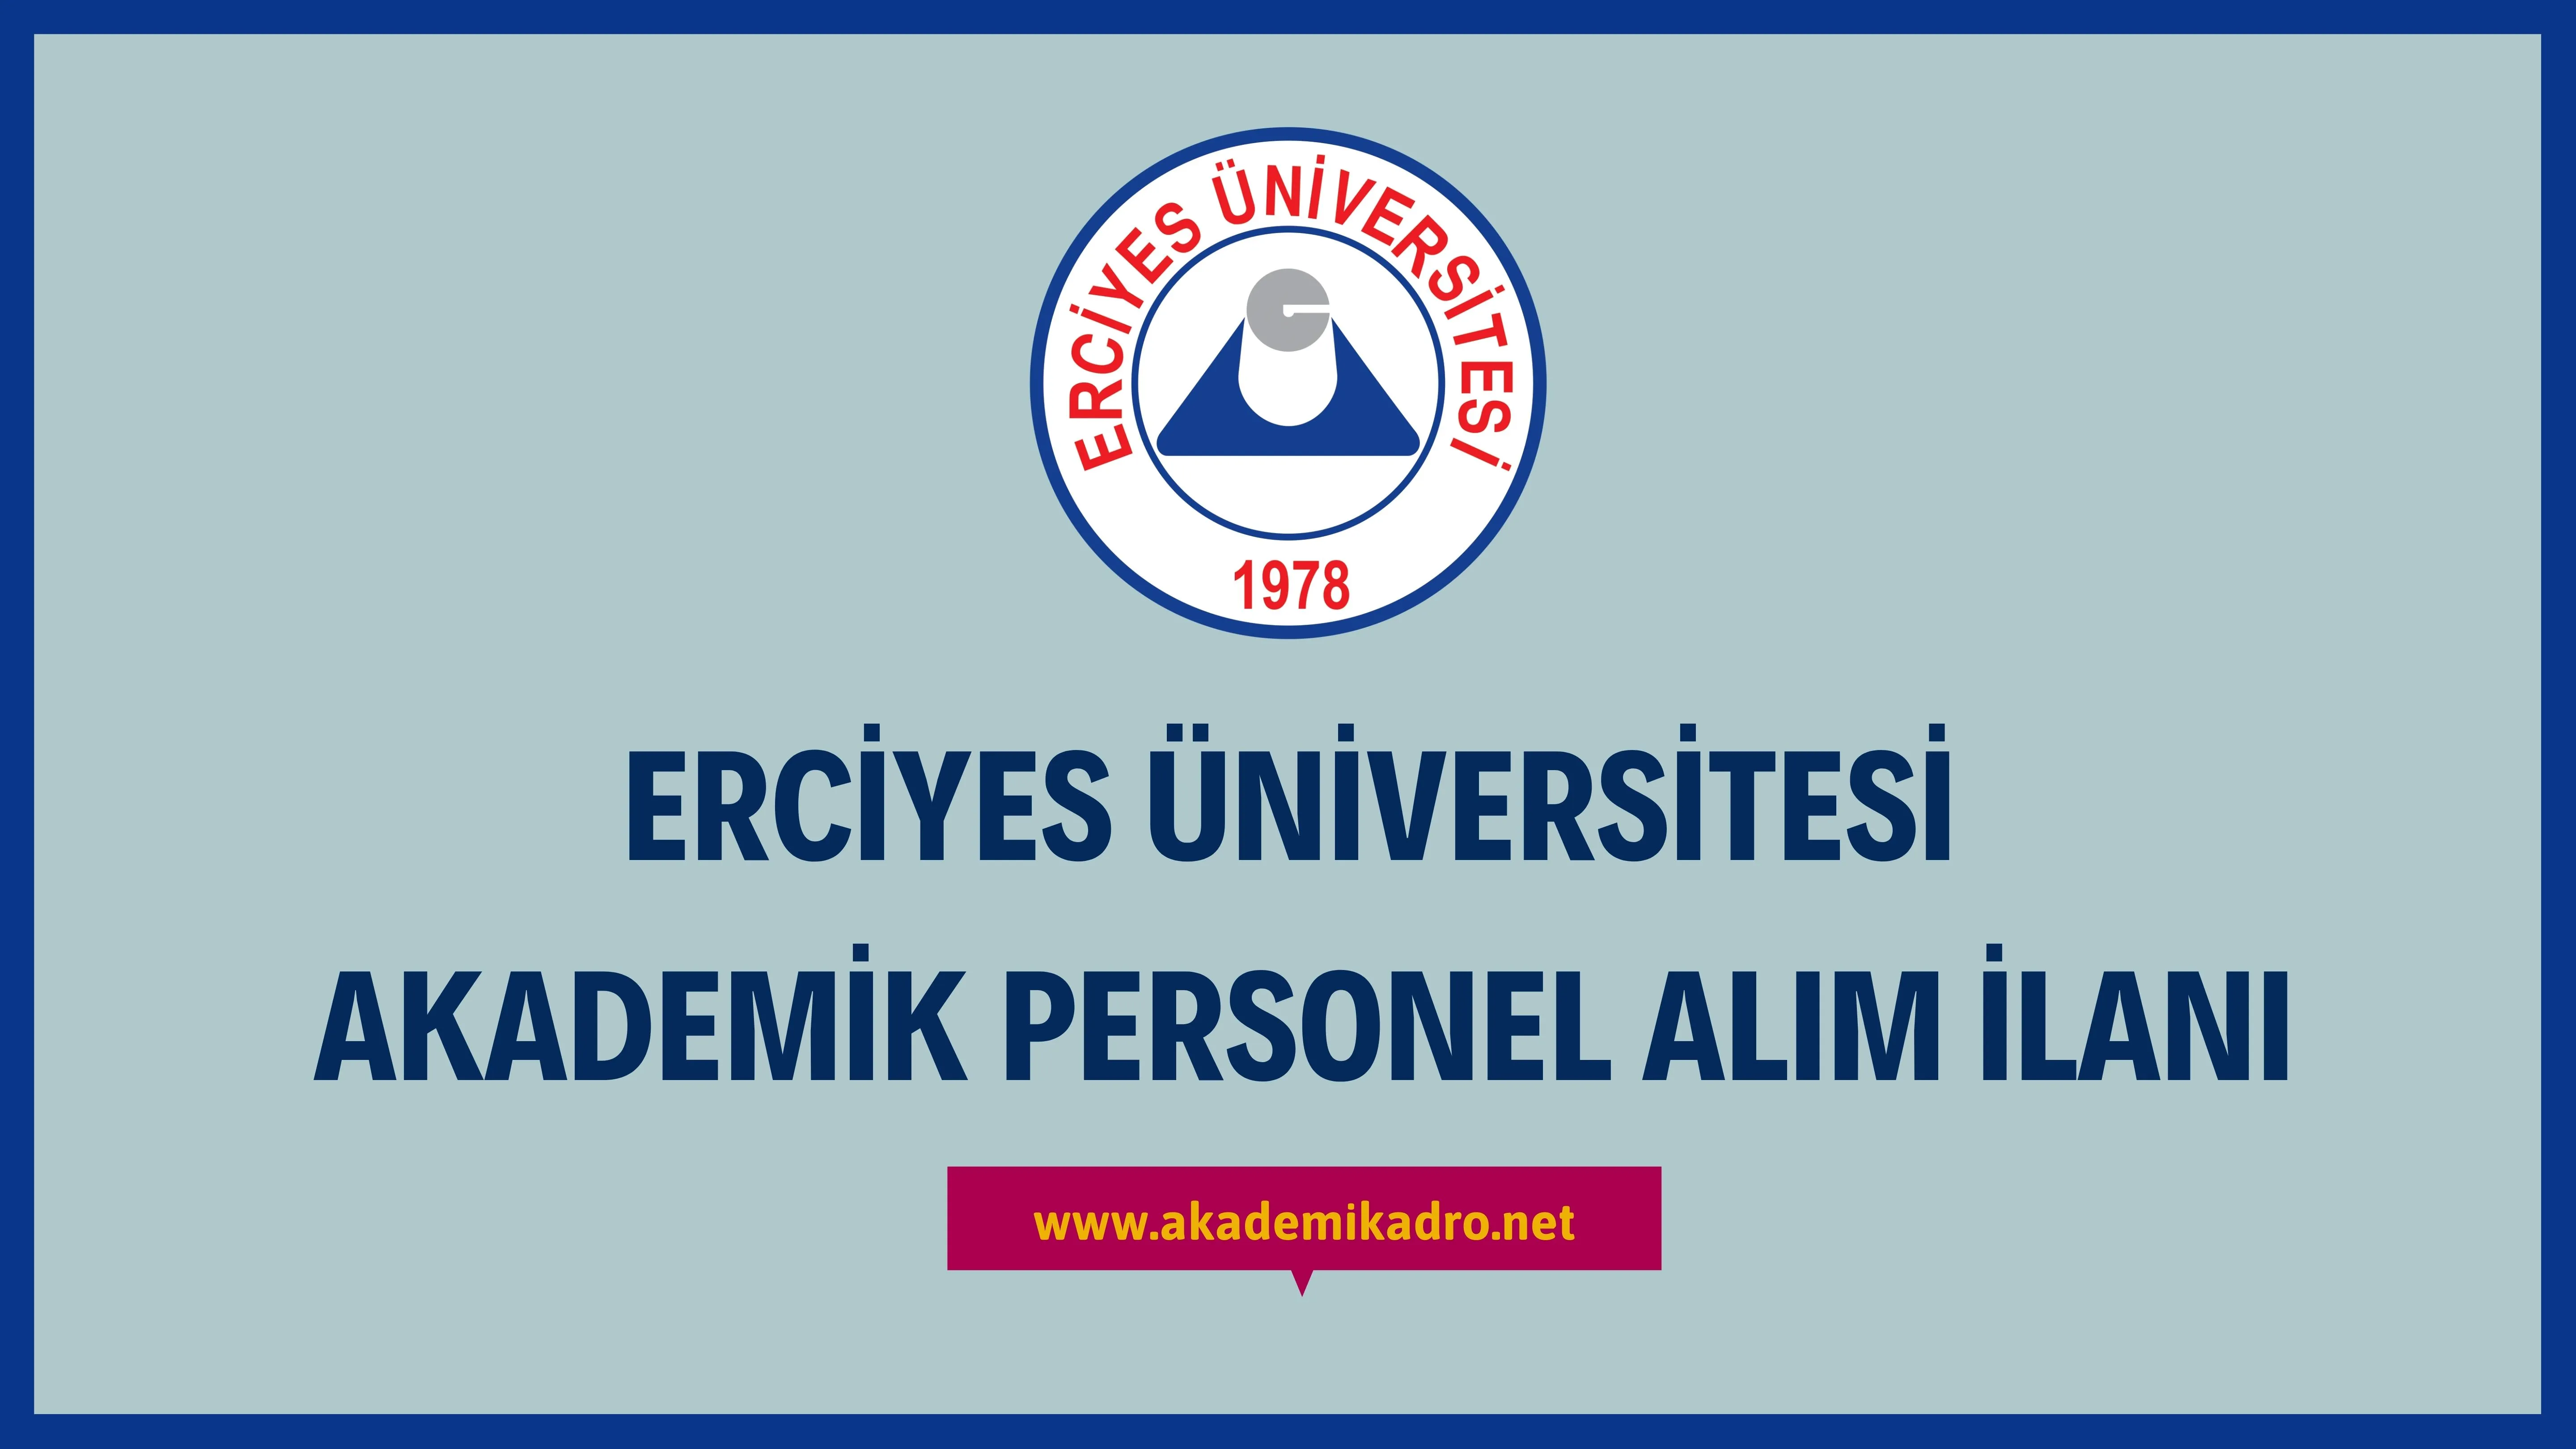 Erciyes Üniversitesi çeşitli branşlarda 9 akademik personel alacak. Son başvuru tarihi 19 Aralık 2022.